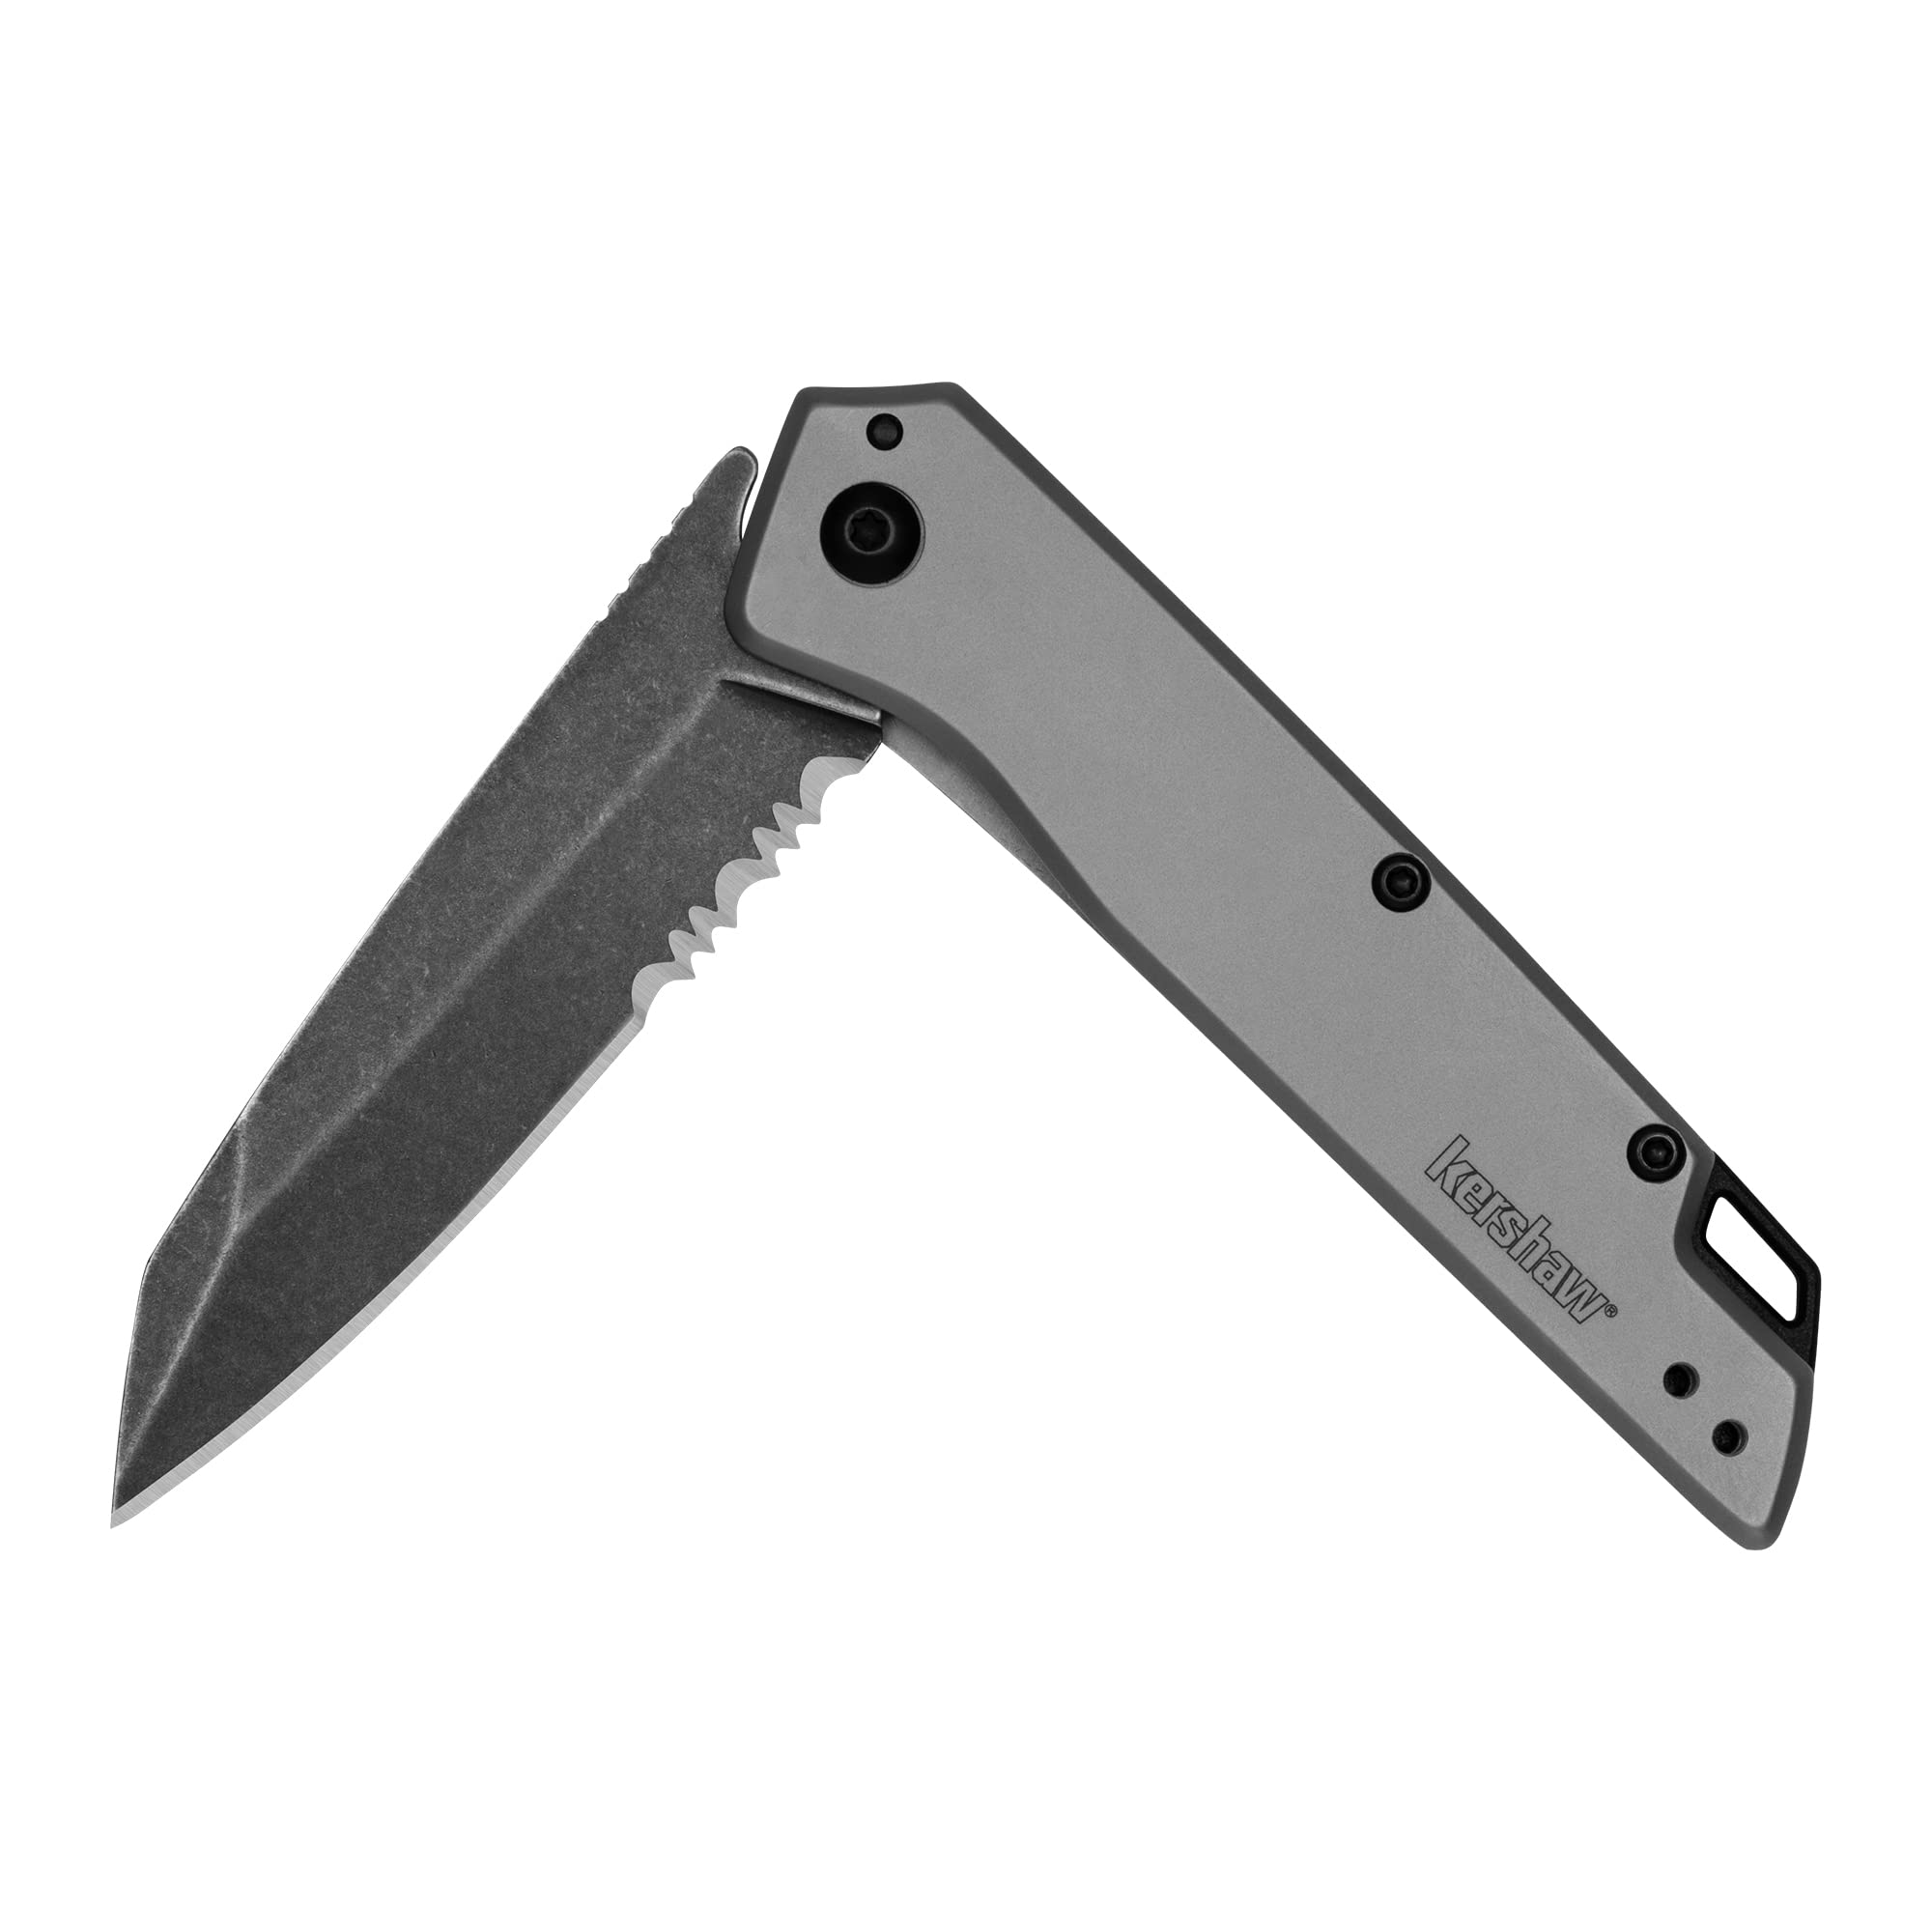 Kershaw 2.9" 4Cr13 Misdirect Black-Oxide Blackwash Finish Blade Pocketknife w/ Stainless Steel Stonewash Finish Handle (1365ST) $18.20 + Free Shipping w/ Prime or on $35+